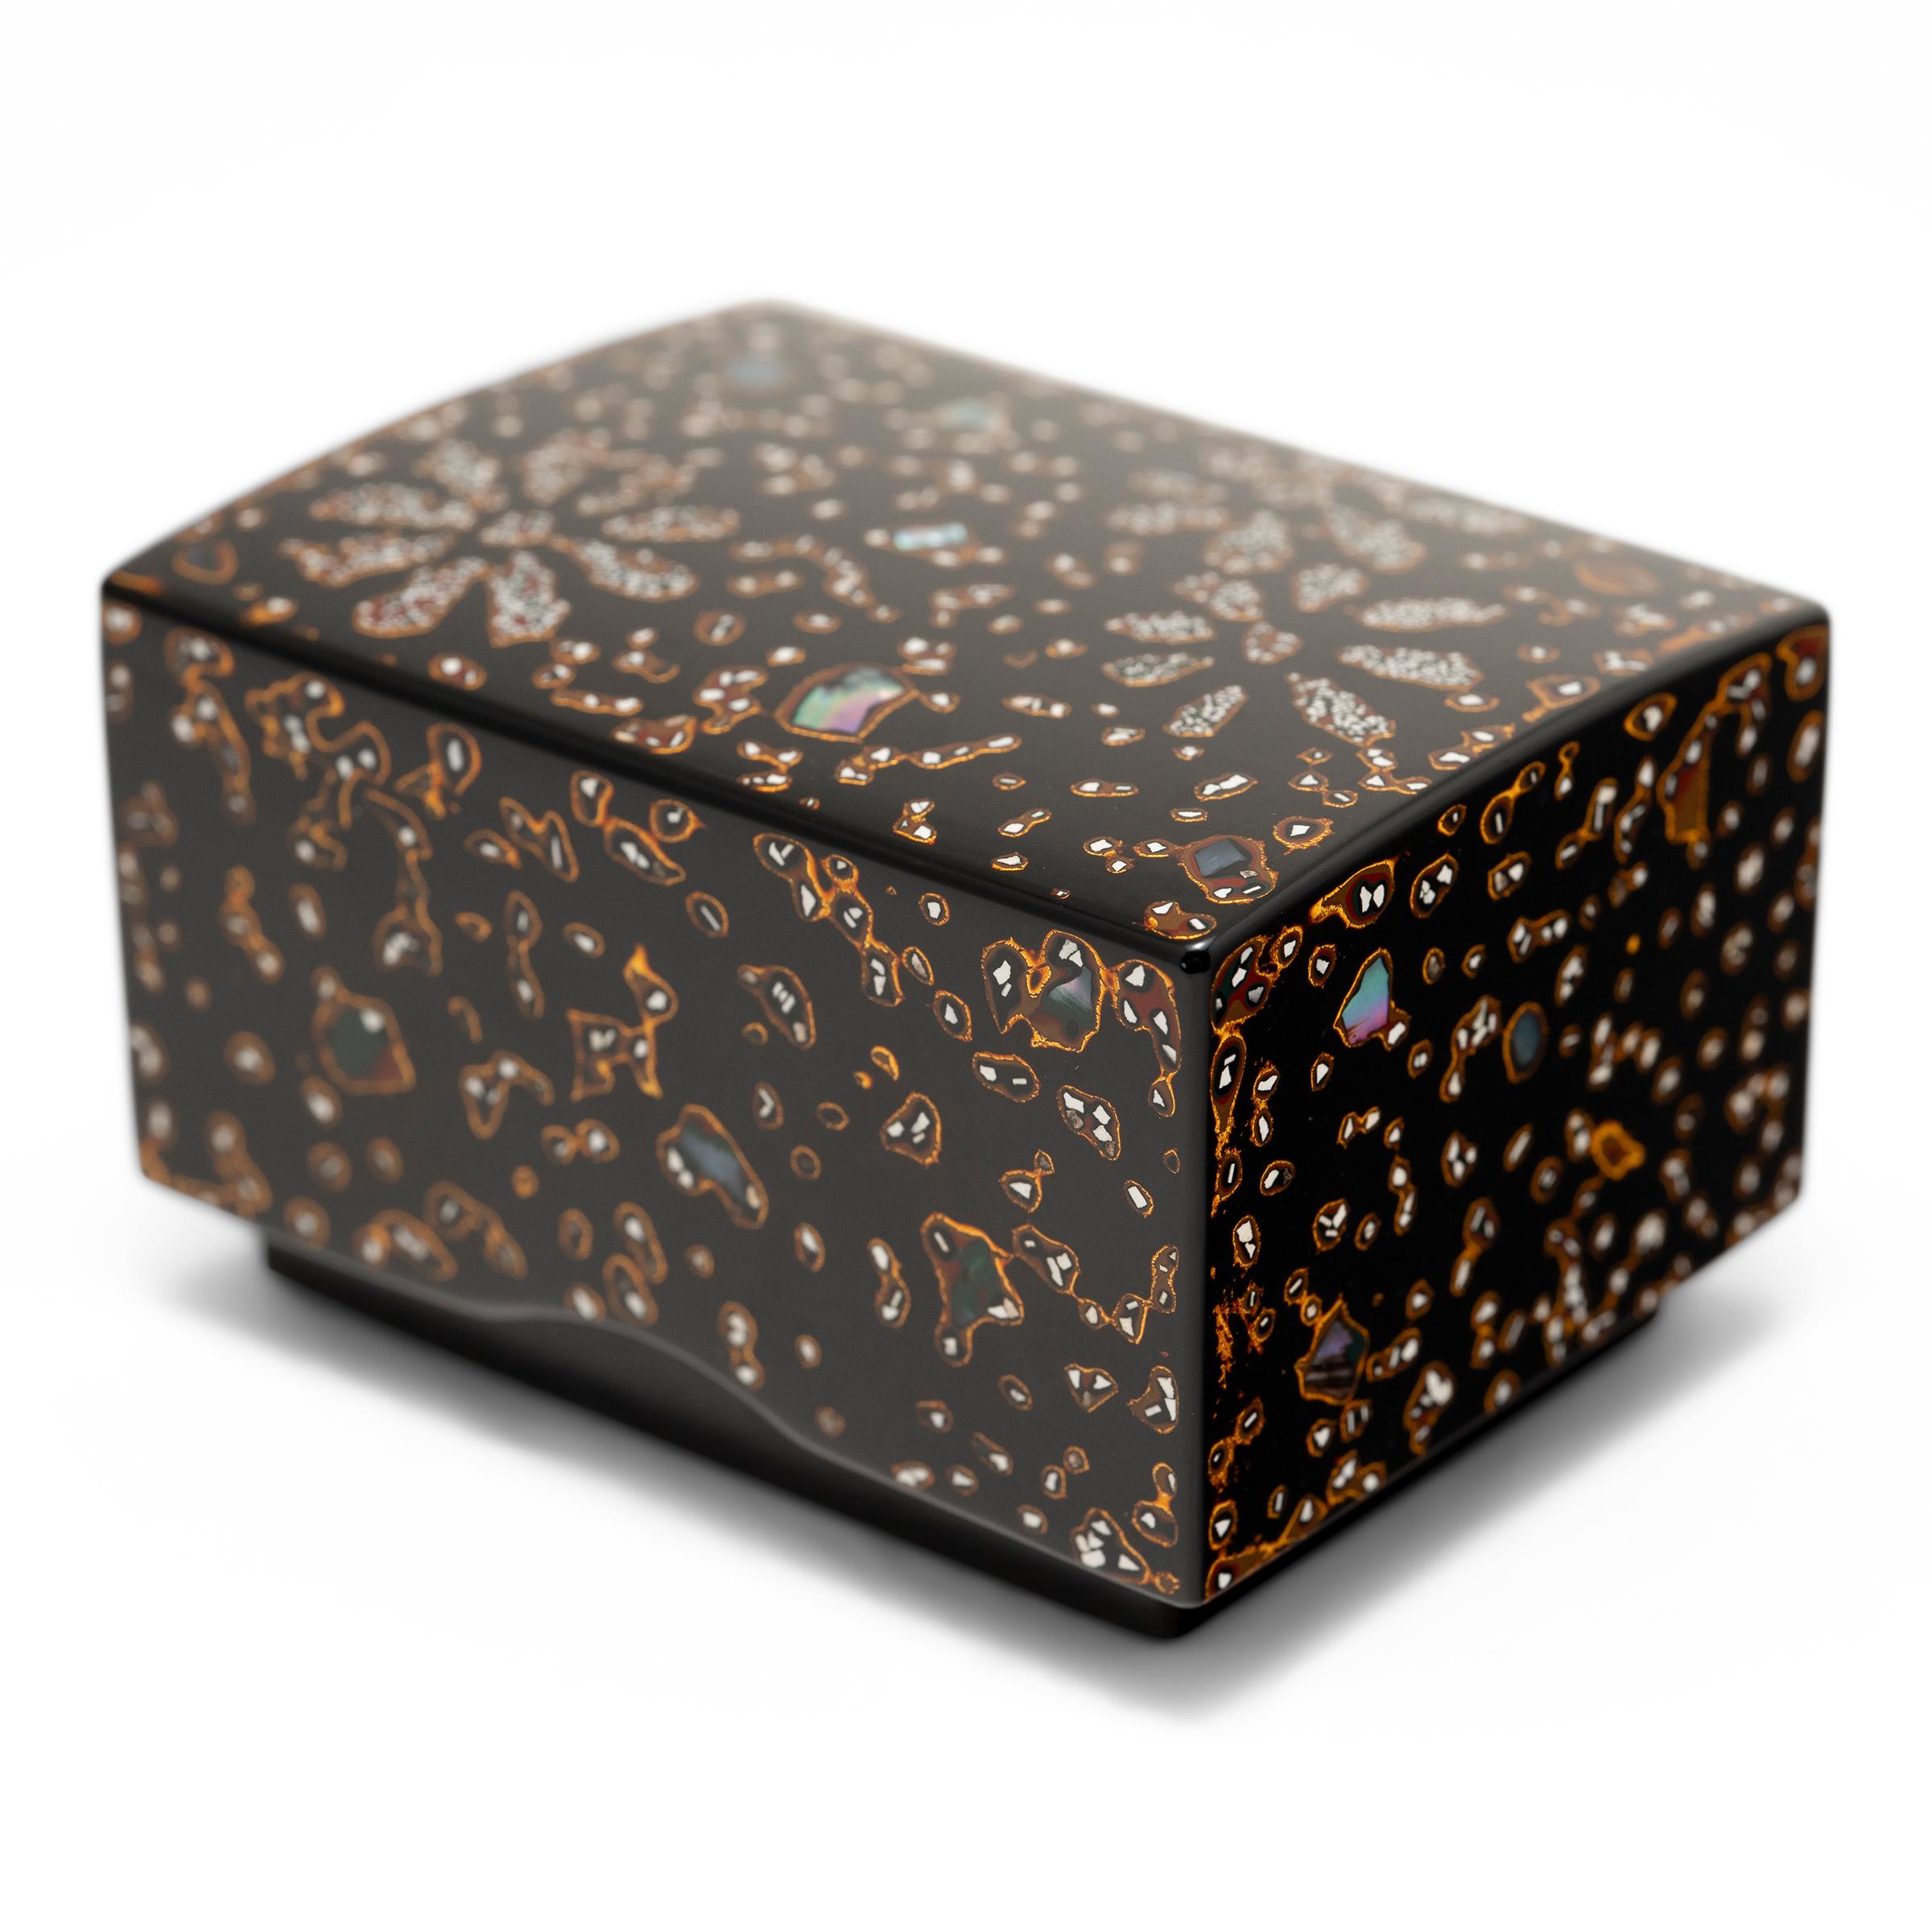 Cette petite boîte à souvenirs japonaise est décorée selon une technique de laque traditionnelle appelée tsugaru-nuri, dans laquelle de la laque parsemée de morceaux de coquillages et de poudre d'or est soigneusement versée sur un support en bois et